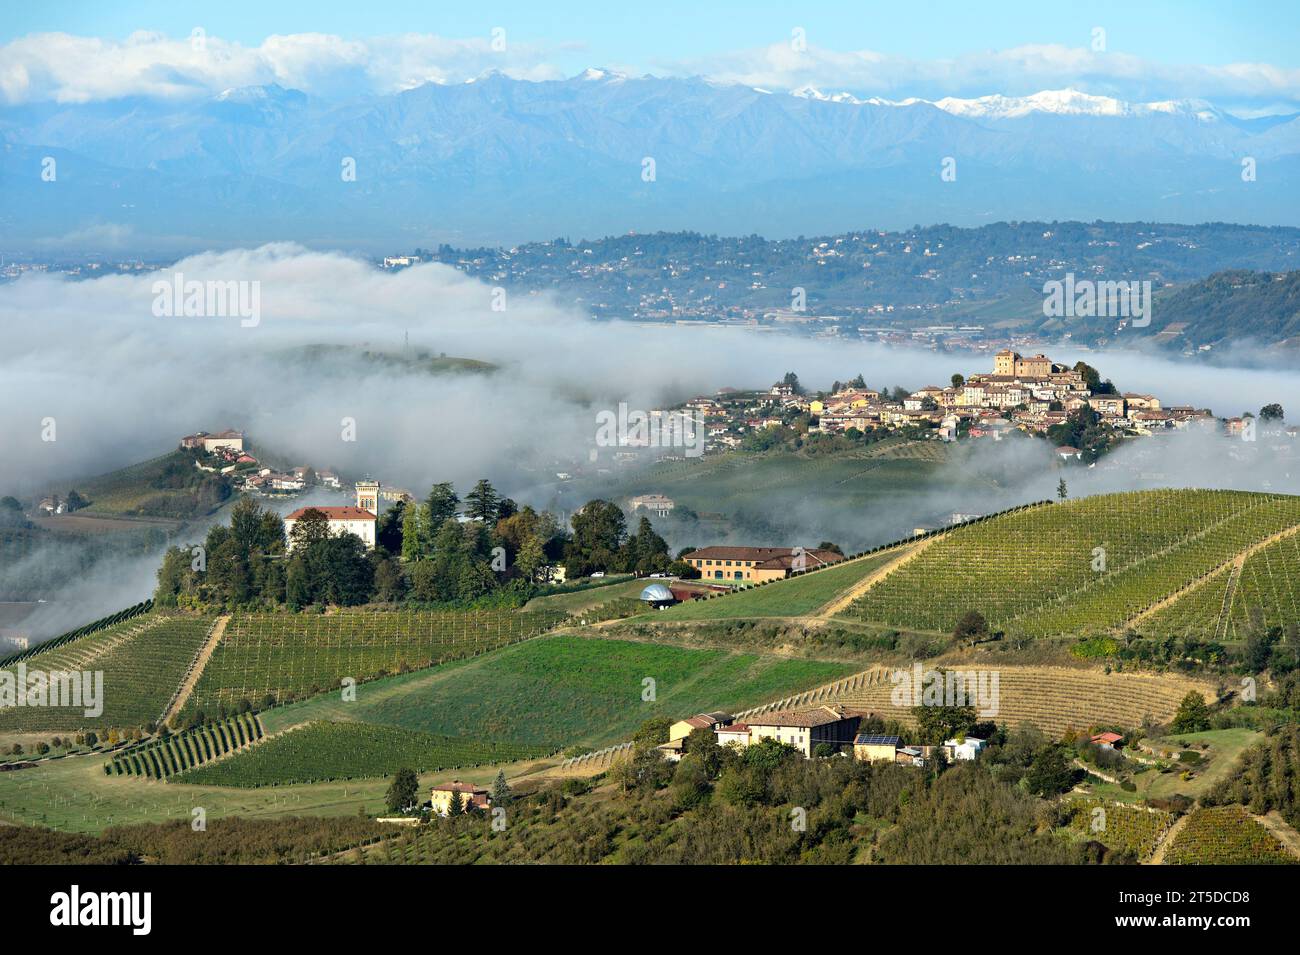 Herbstlicher Nebel umgibt das Dorf Roddi in der hügeligen Landschaft des Weinanbaugebiets Langhe, Diano d'Alba, Piemont, Italien Stockfoto